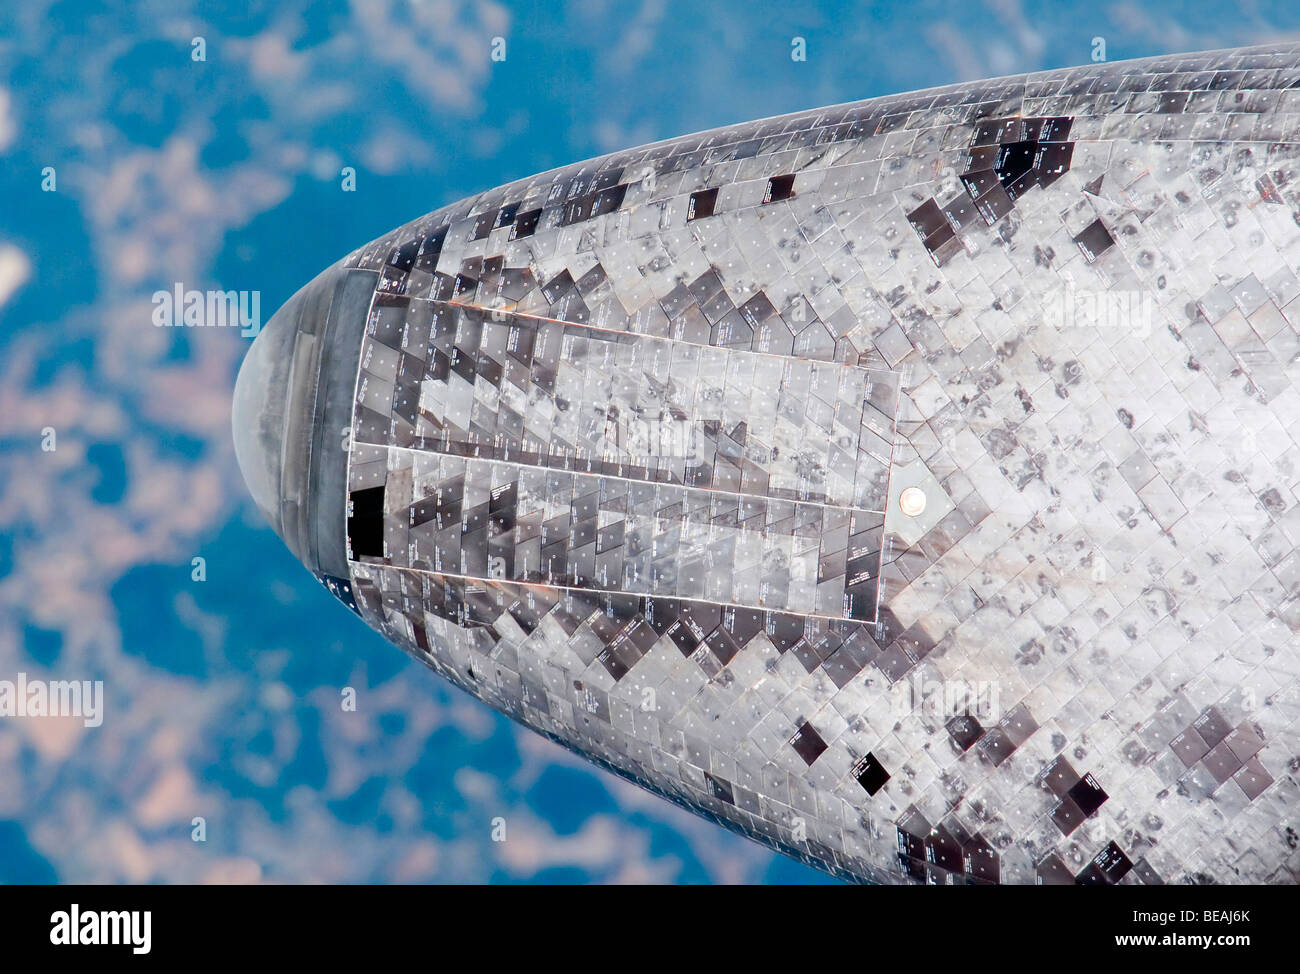 Indagine sulle piastrelle termico nella parte inferiore della navetta spaziale Discovery. Versione migliorata di un originale immagine della NASA. Credit NASA Foto Stock